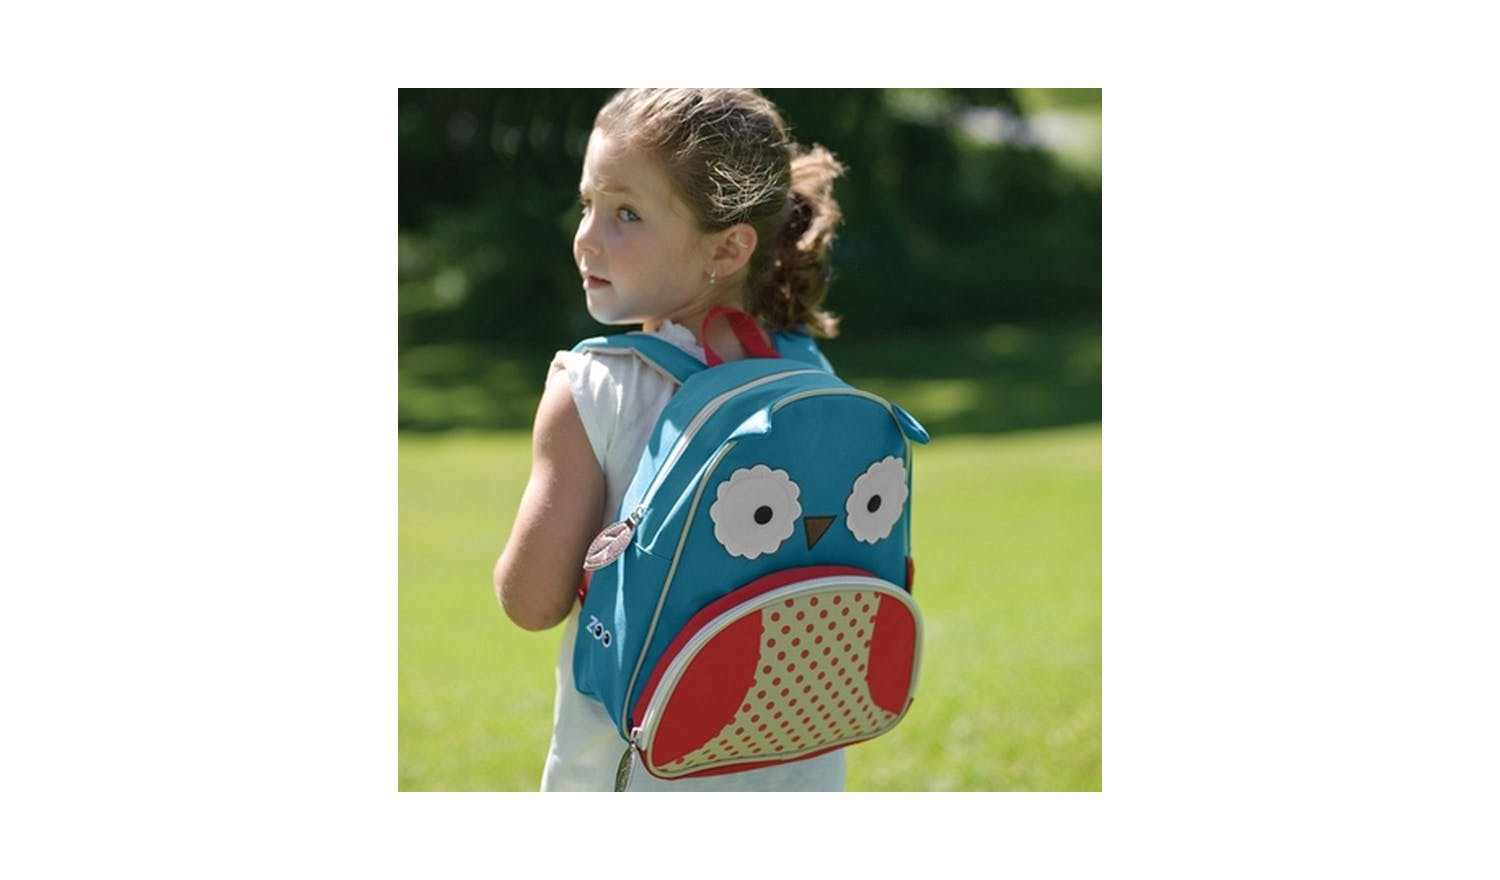 Skip Hop Zoo Little Kid Backpack - Owl